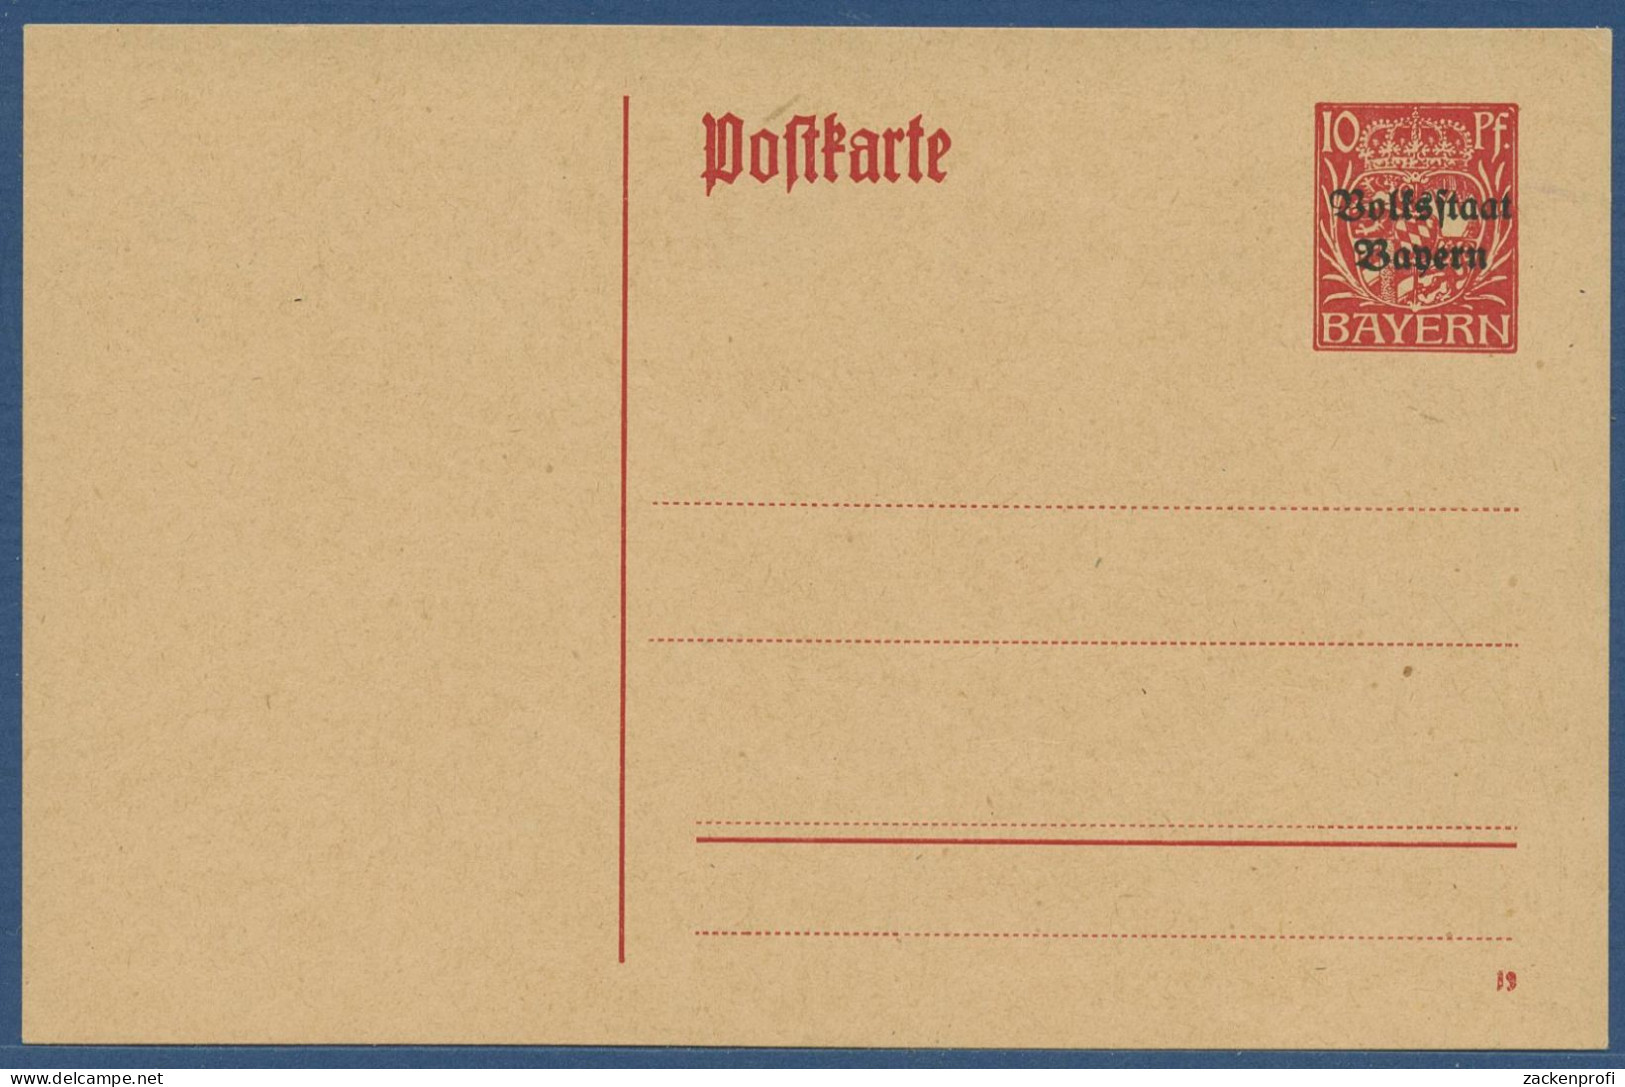 Bayern 1919 Volksstaat Postkarte P 104 Ungebraucht (X40973) - Enteros Postales